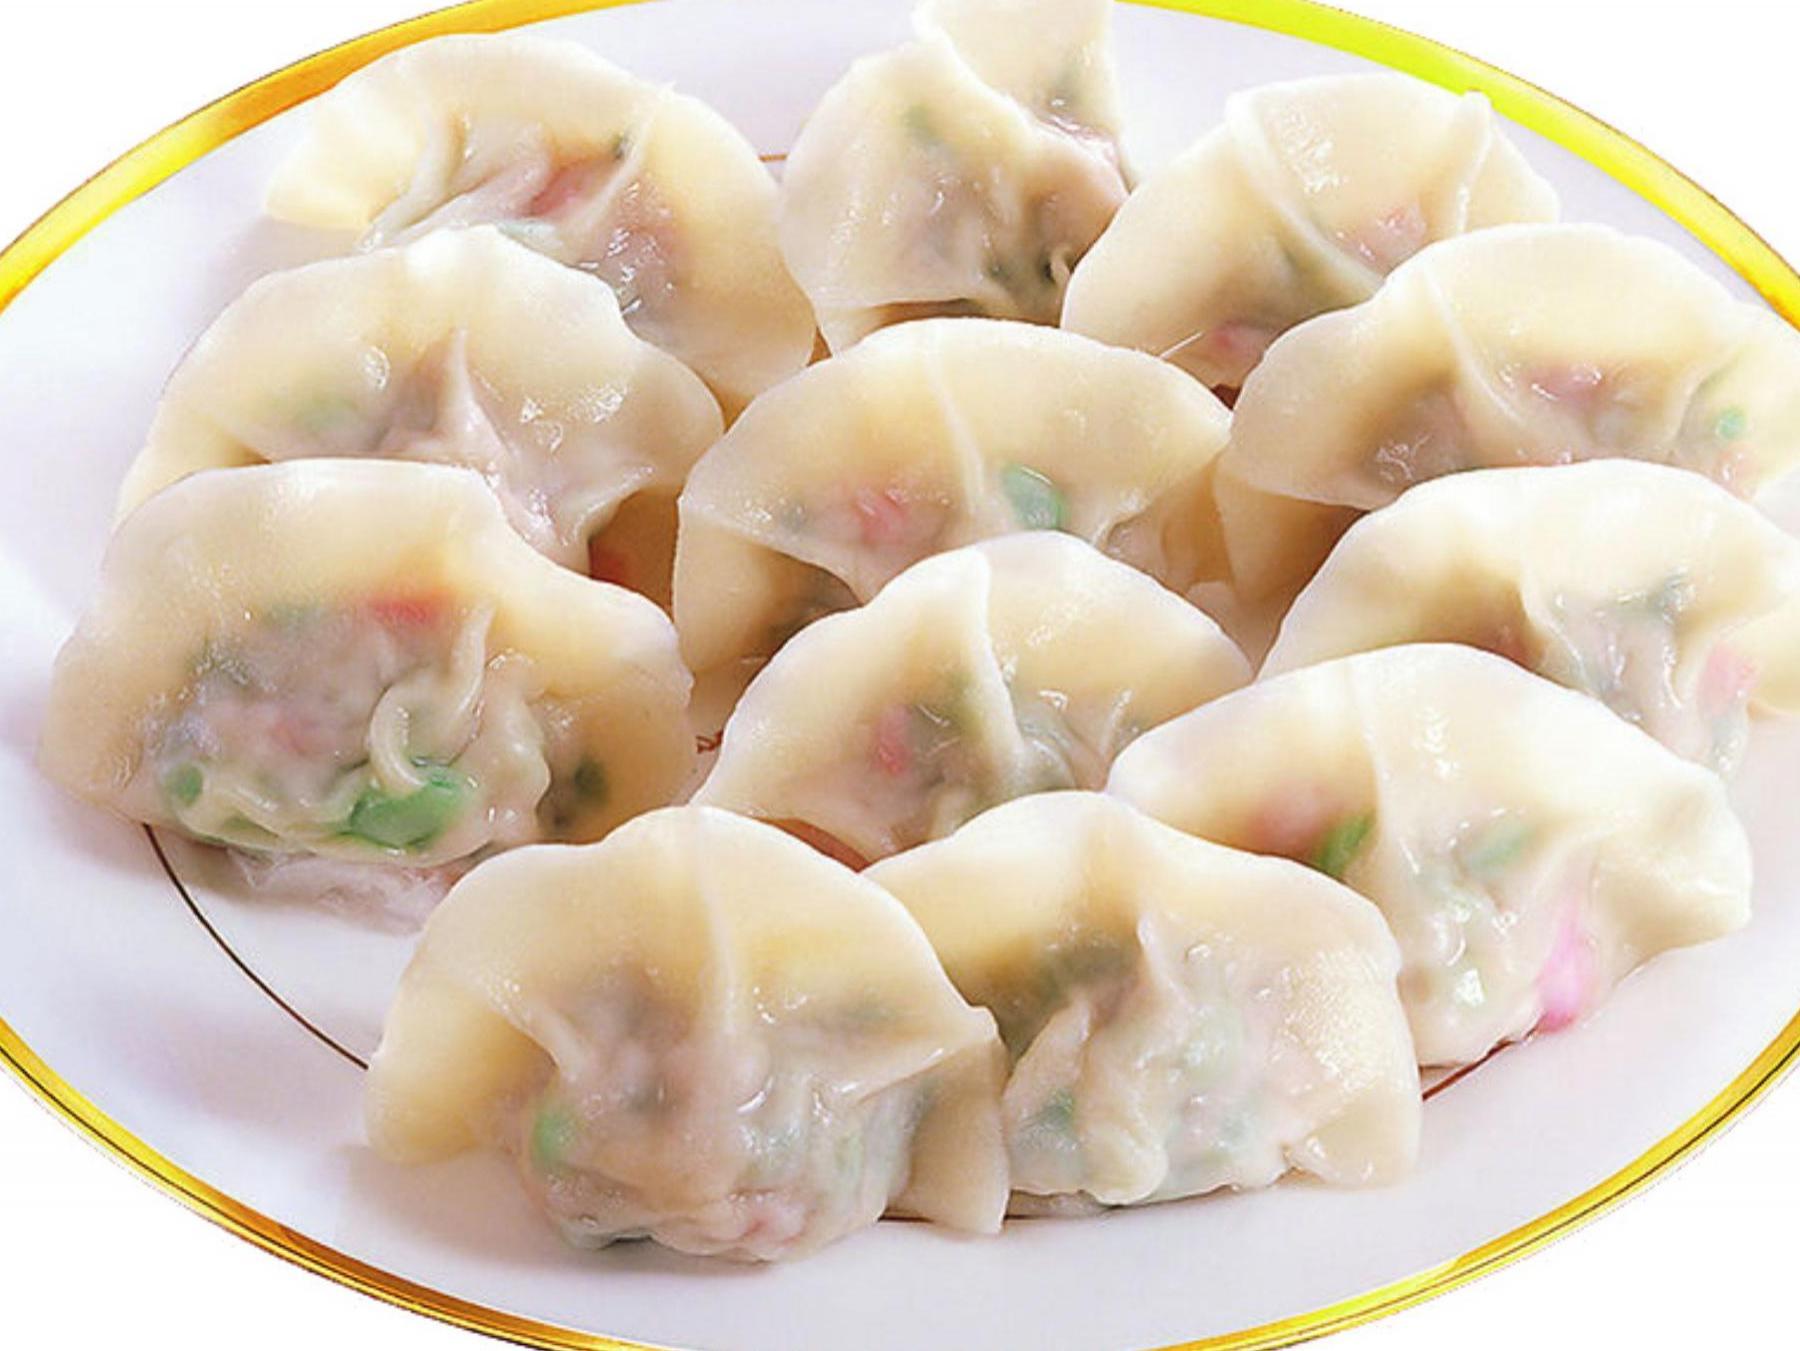 水饺(食谱)饺子,是一种以面为皮的充馅食物,是在中国北方比较传统的